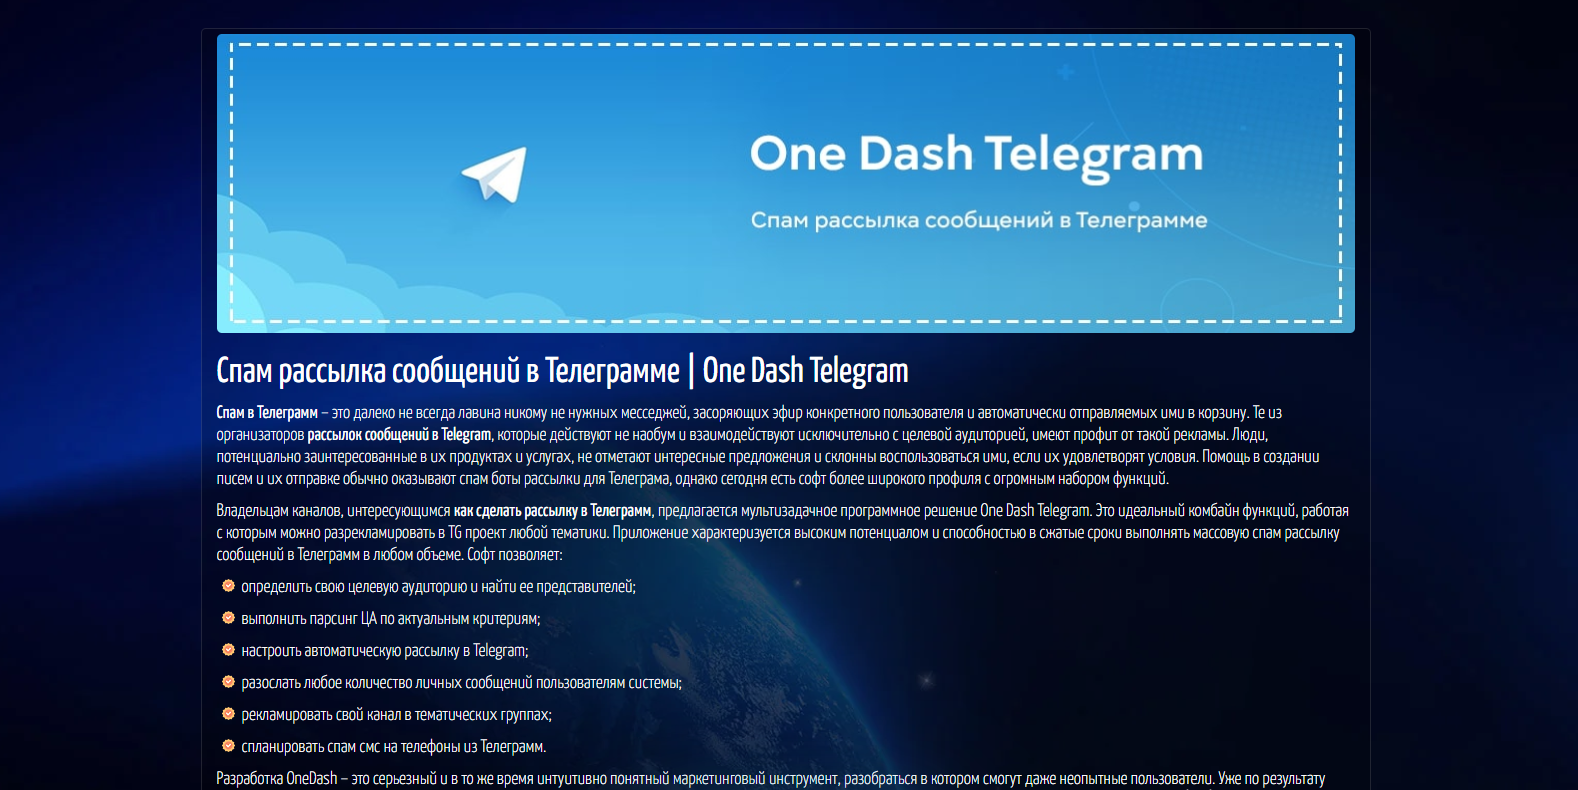 Рассылка спама в Telegram: преимущества для предпринимателей